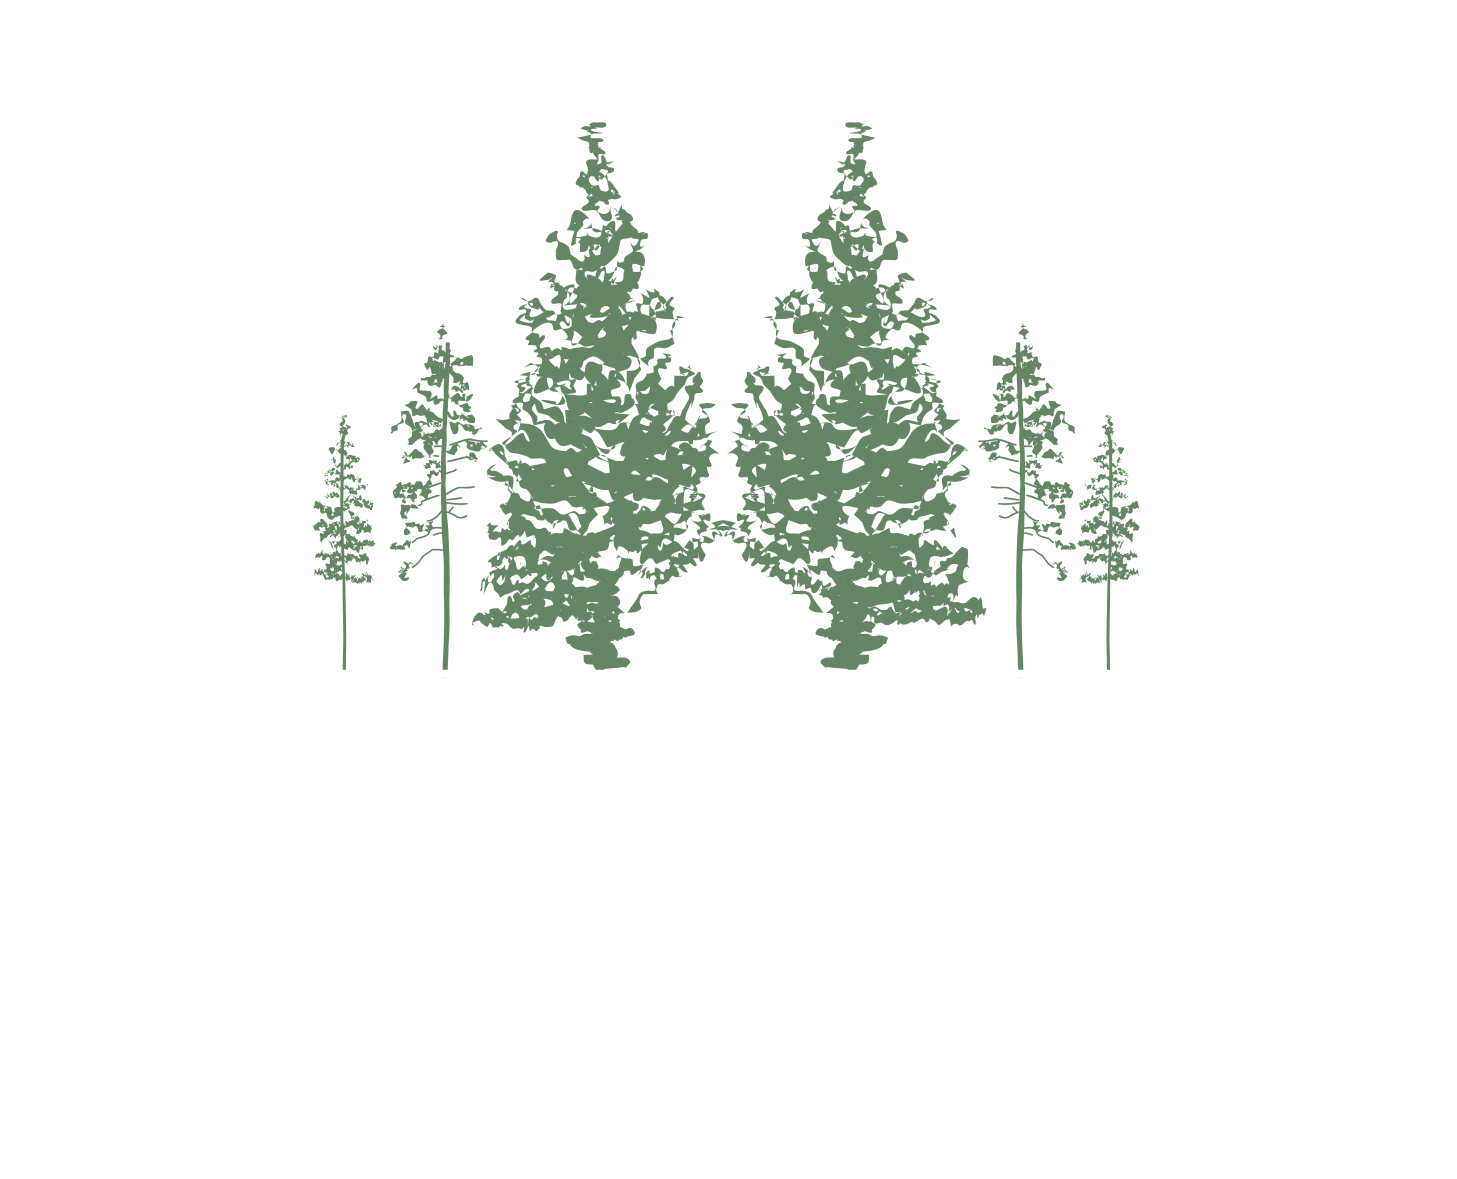 Le Boisé de la Pointe-du-Lac Témiscouata